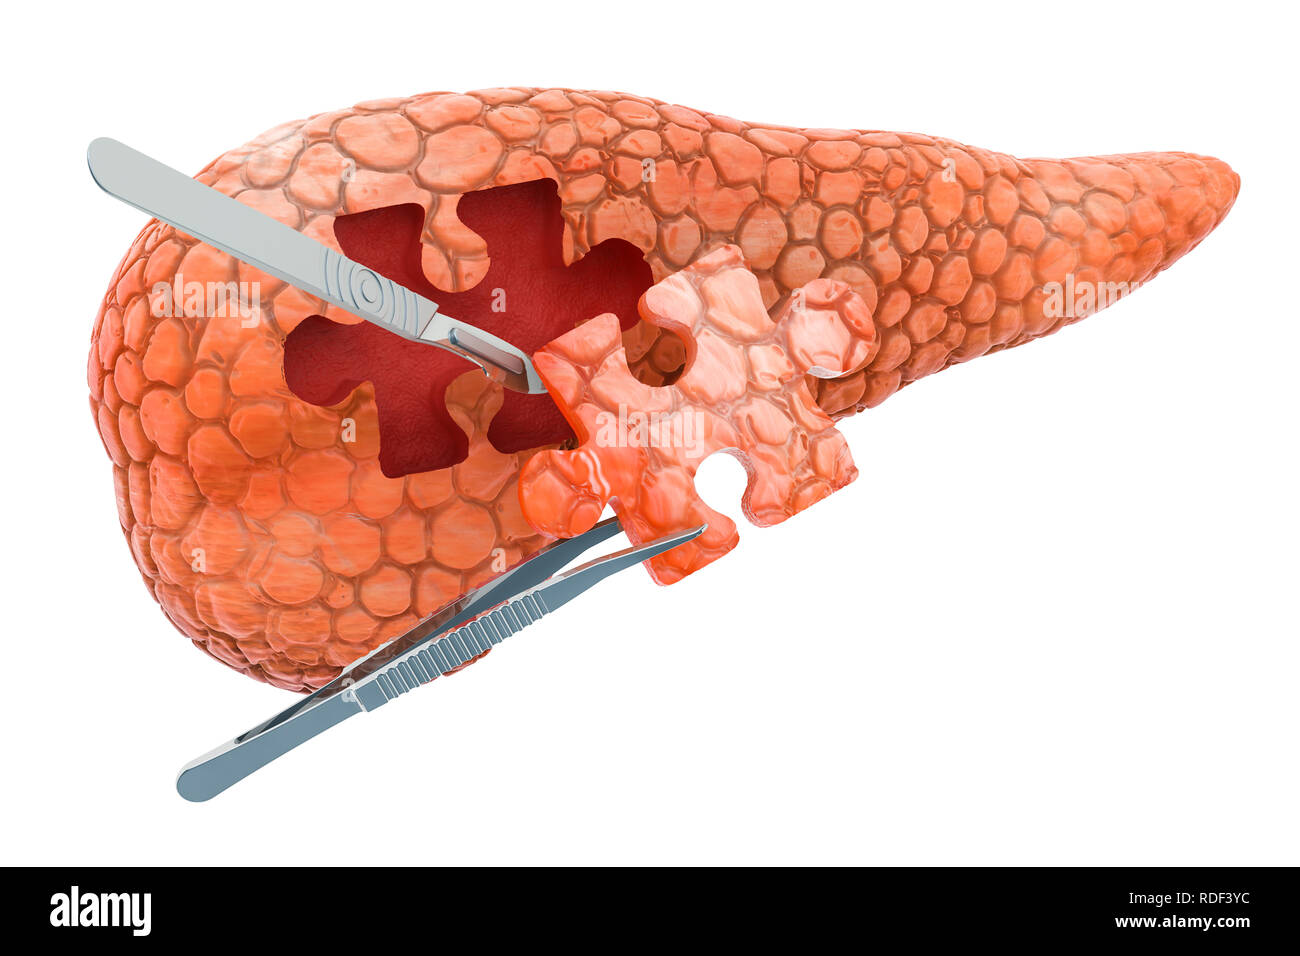 Bauchspeicheldrüse Chirurgie Konzept, 3D-Rendering auf weißem Hintergrund Stockfoto